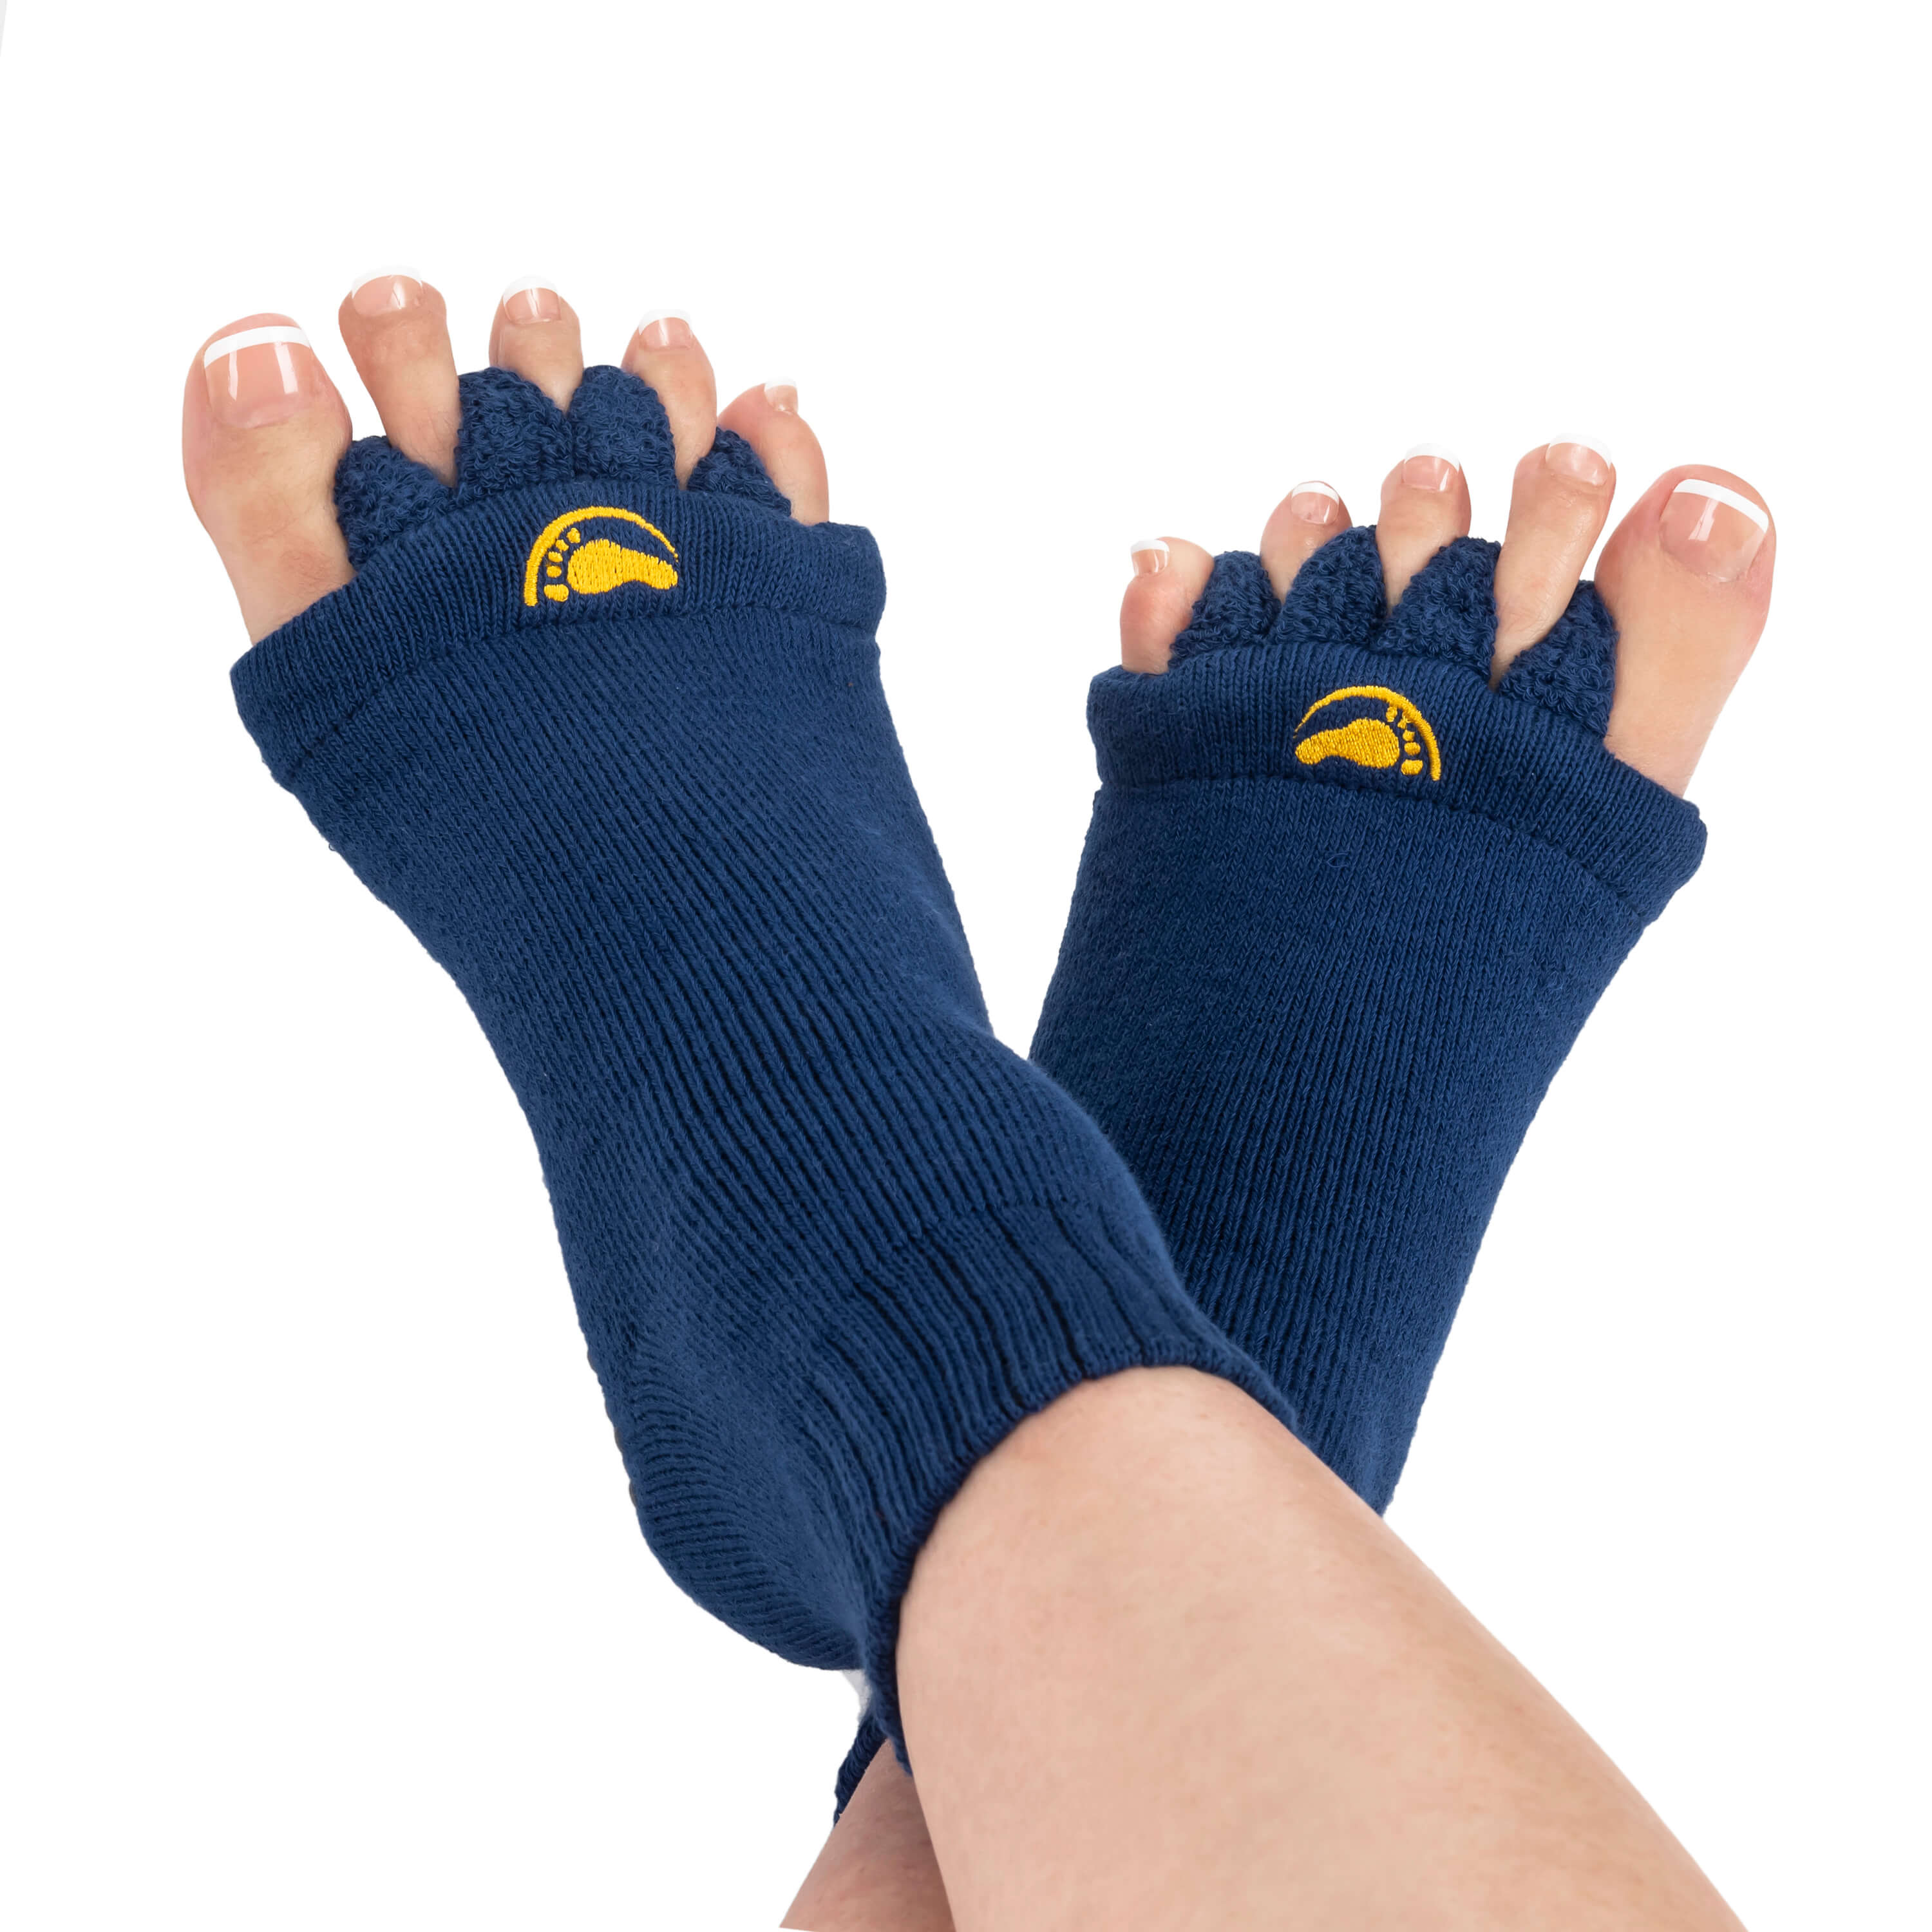 Alignment-socks.co.uk